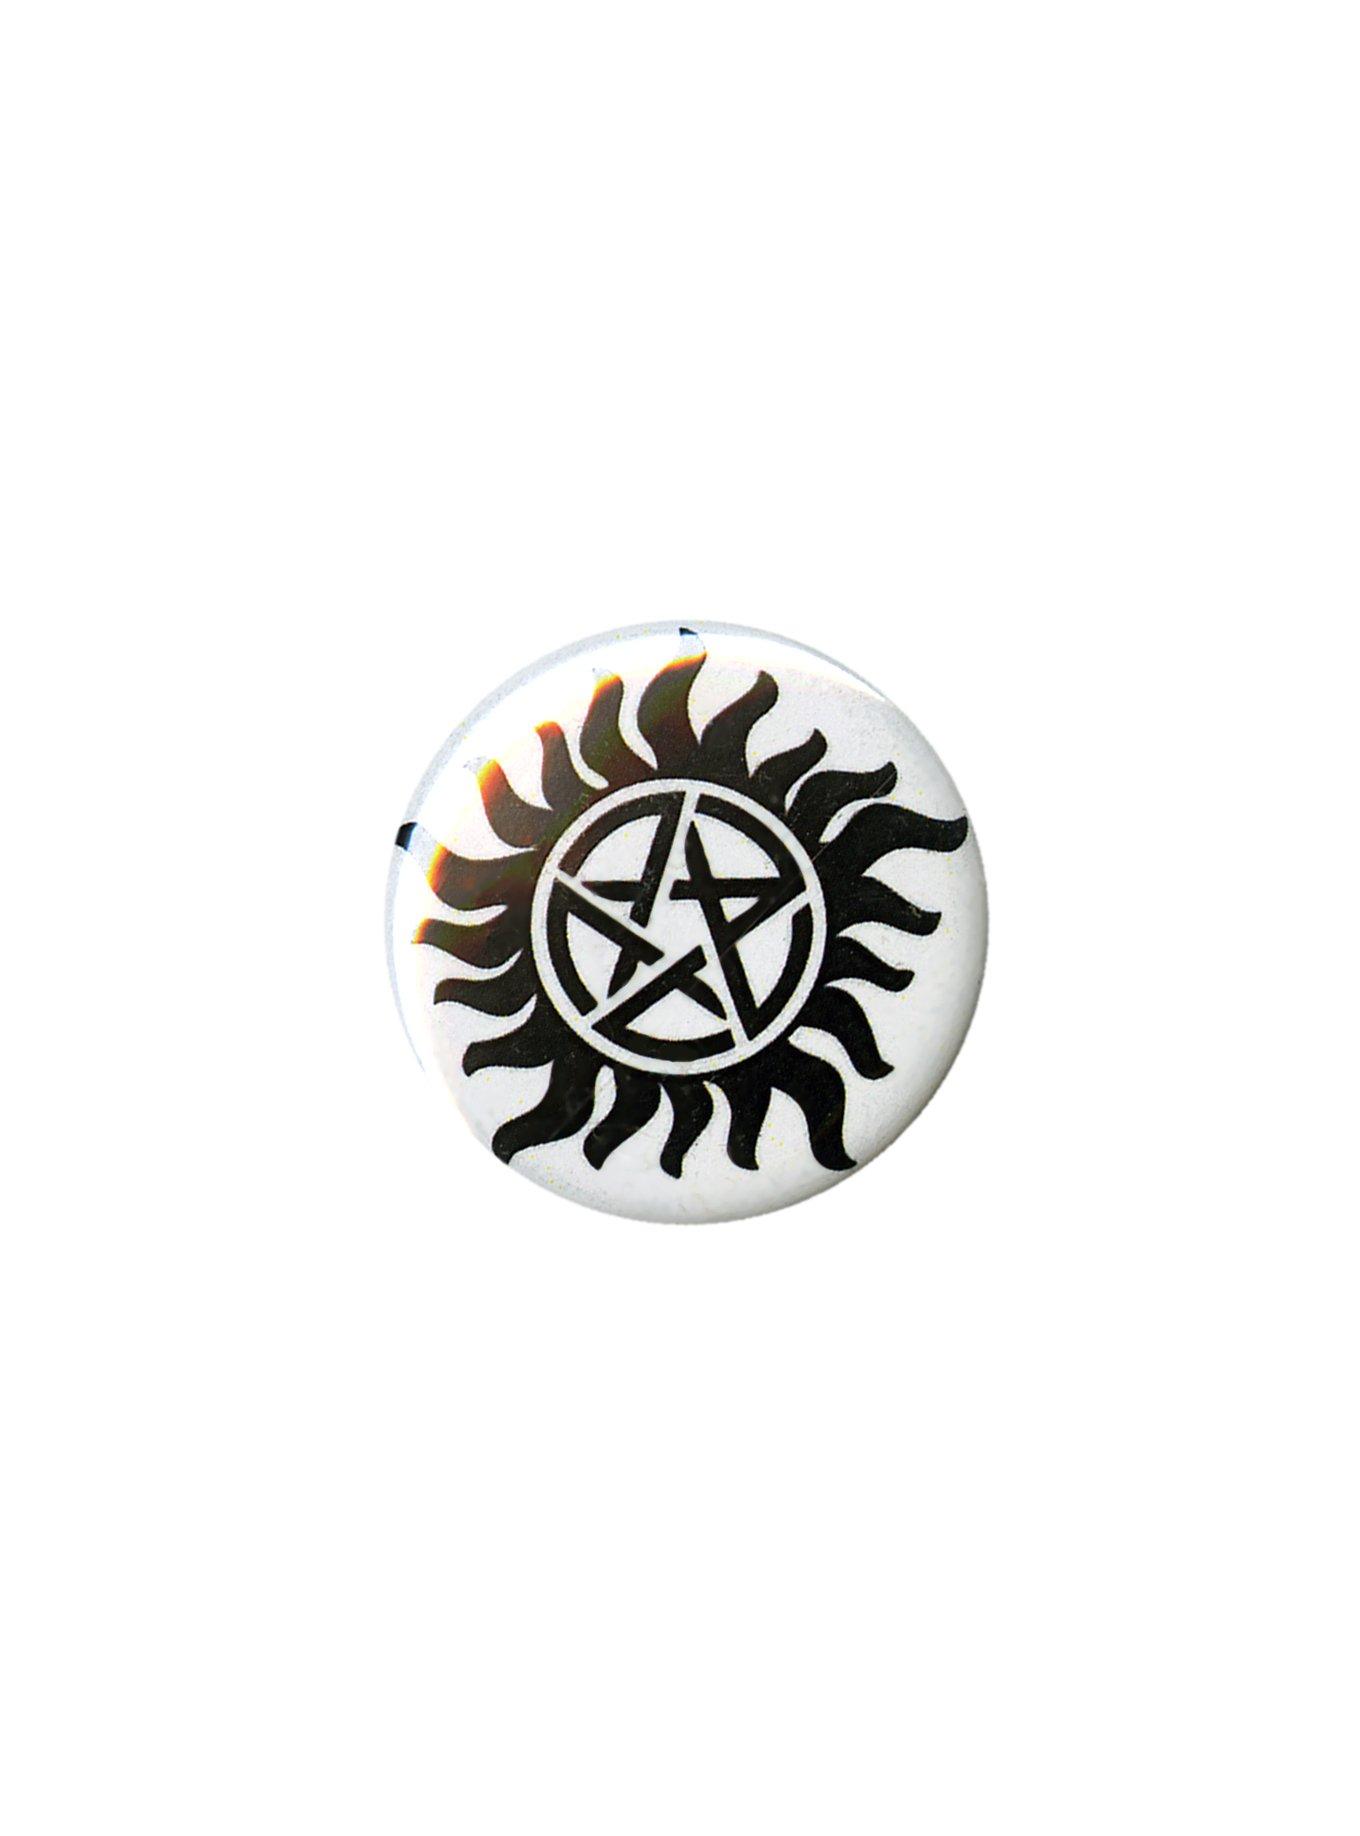 Supernatural Anti-Possession Symbol Pin, , hi-res